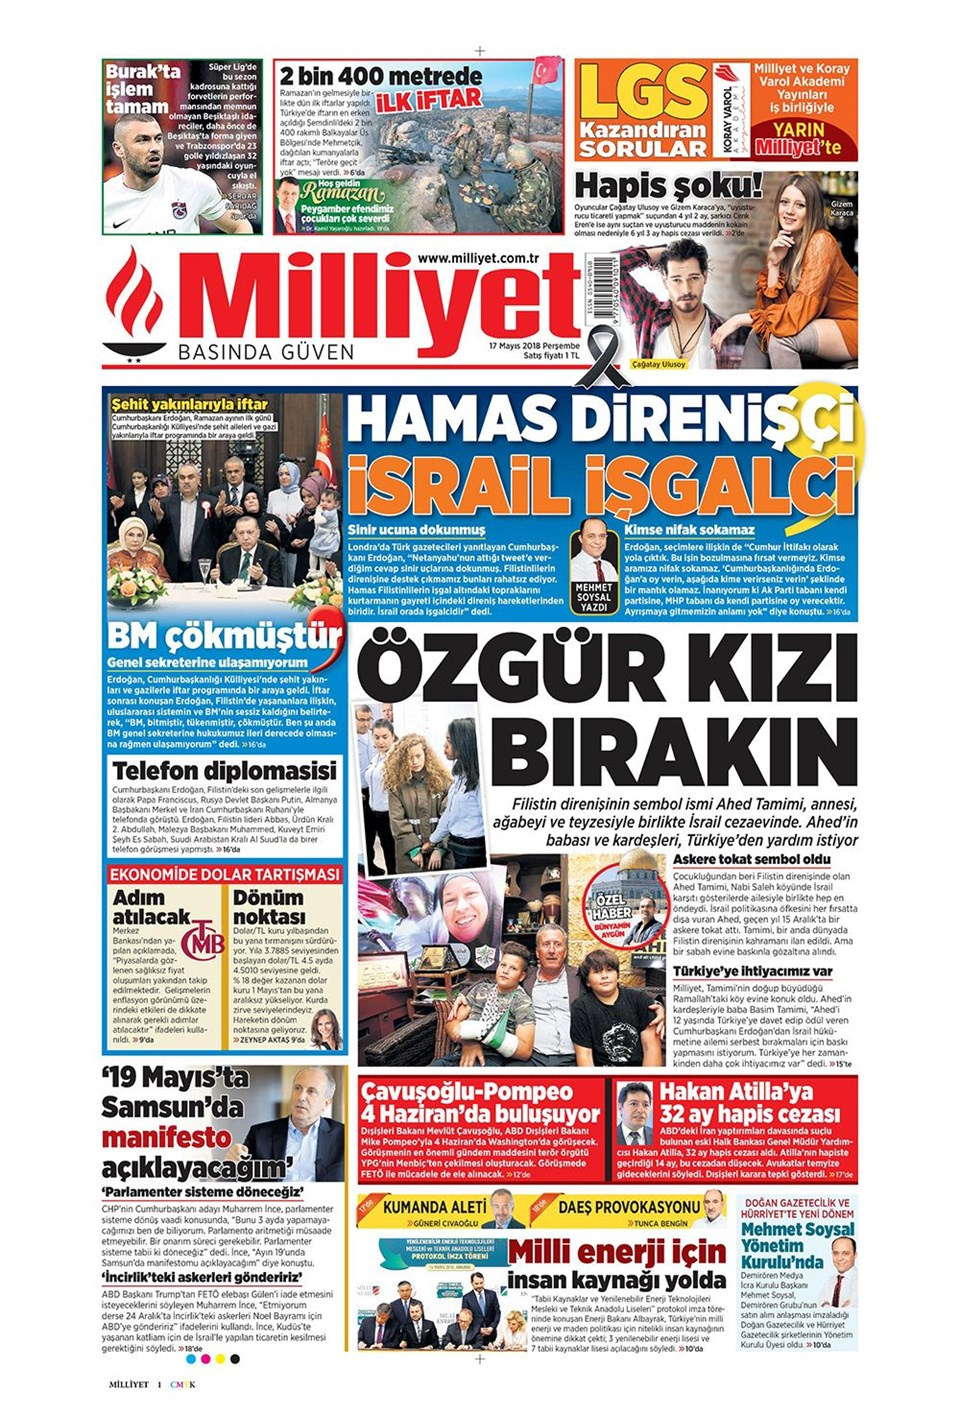 Gazete manşetleri 17 Mayıs 2018 Hürriyet - Sözcü - Habertürk